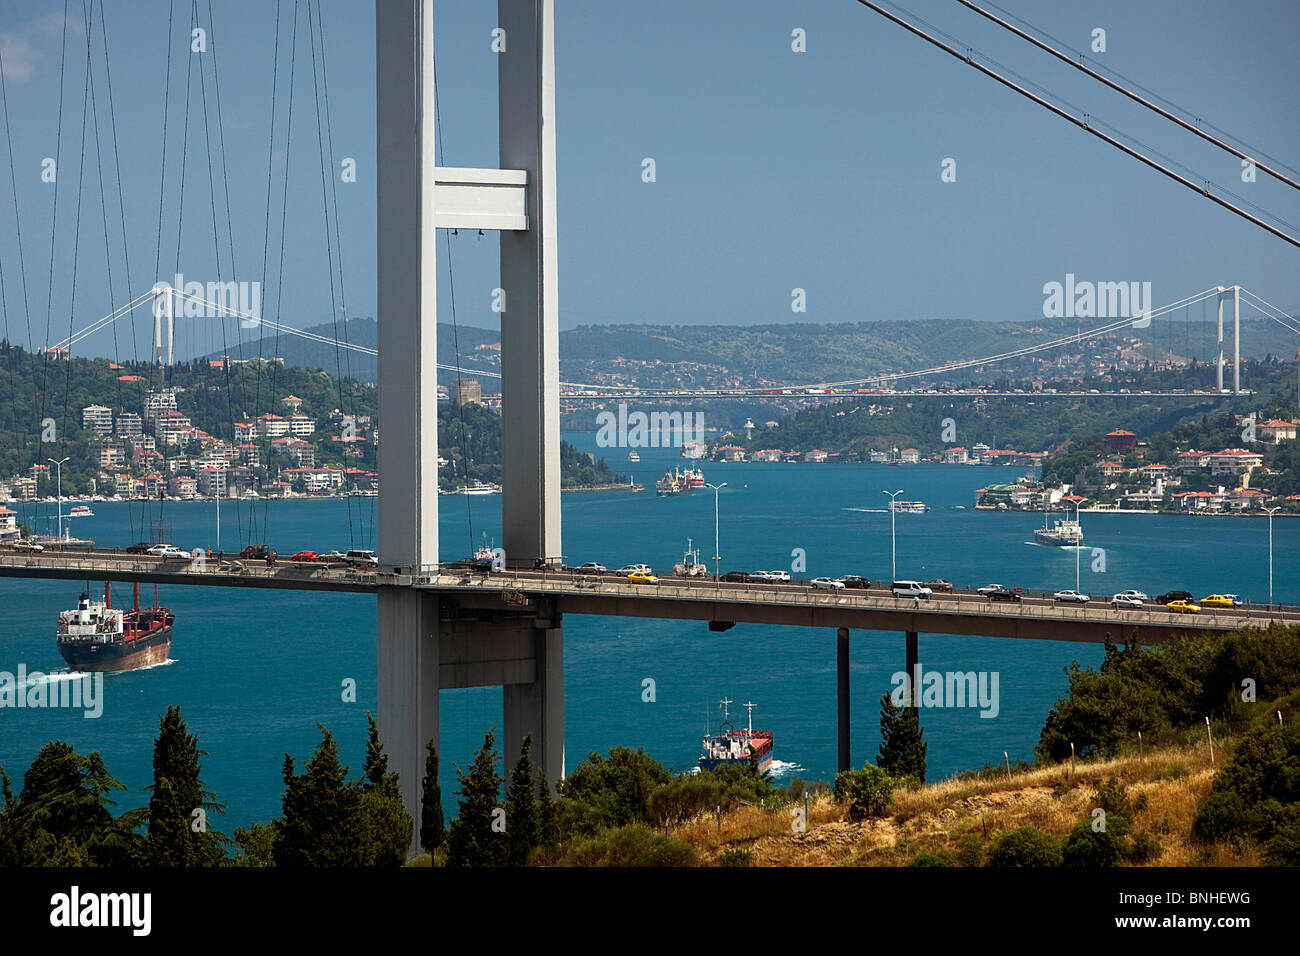 La Turchia Giugno 2008 Istanbul City lo stretto del Bosforo Ponte sul Bosforo Fatih Sultan Mehmet ponti ponte di sospensione per via navigabile Foto Stock